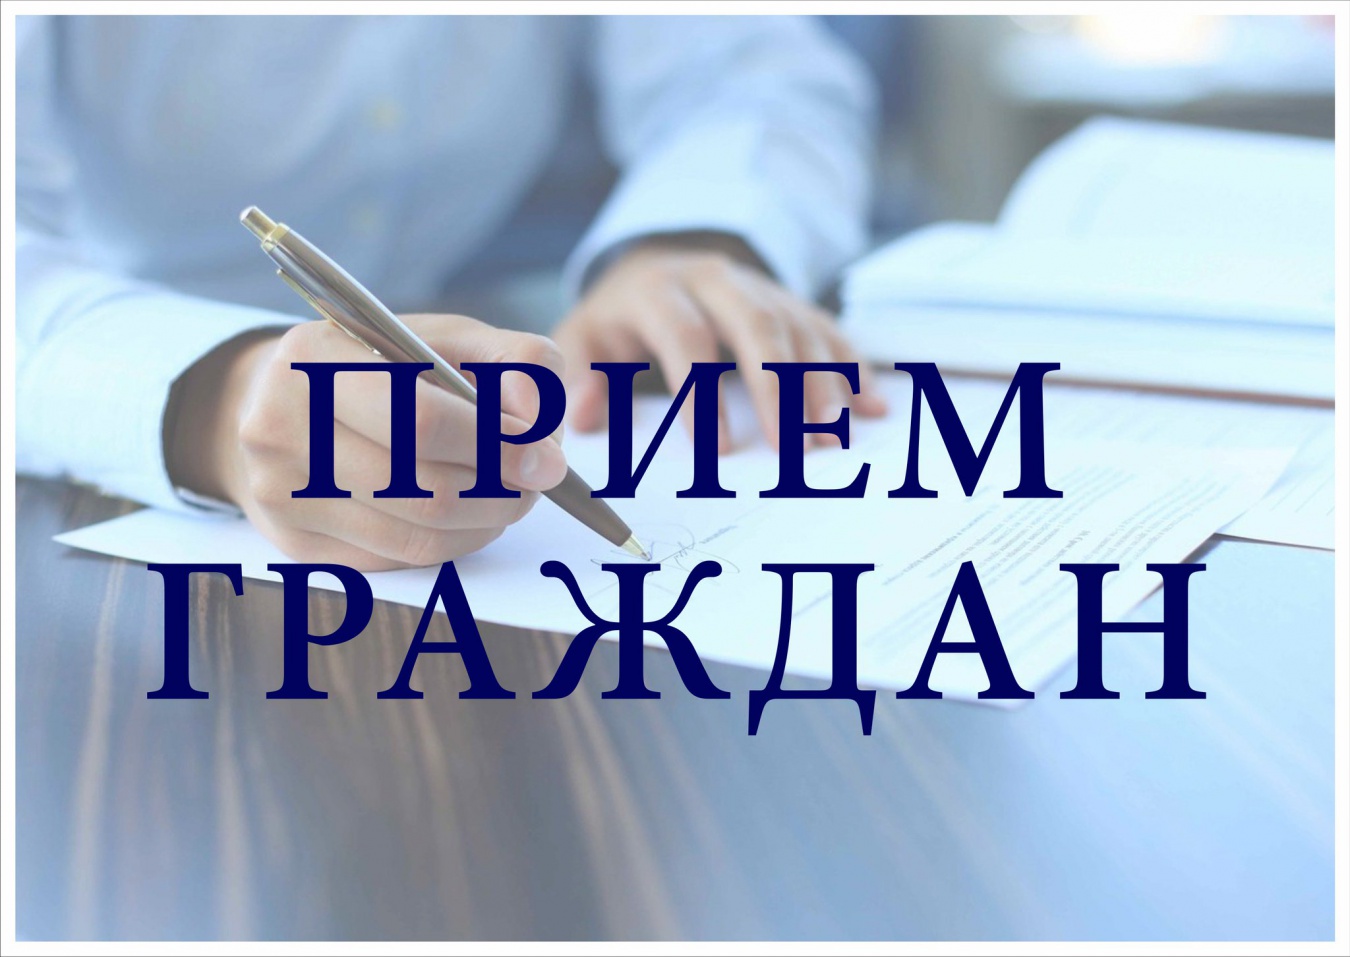 28 июня  в 10:00 состоится личный приём граждан главой администрации района Анной Куташовой.